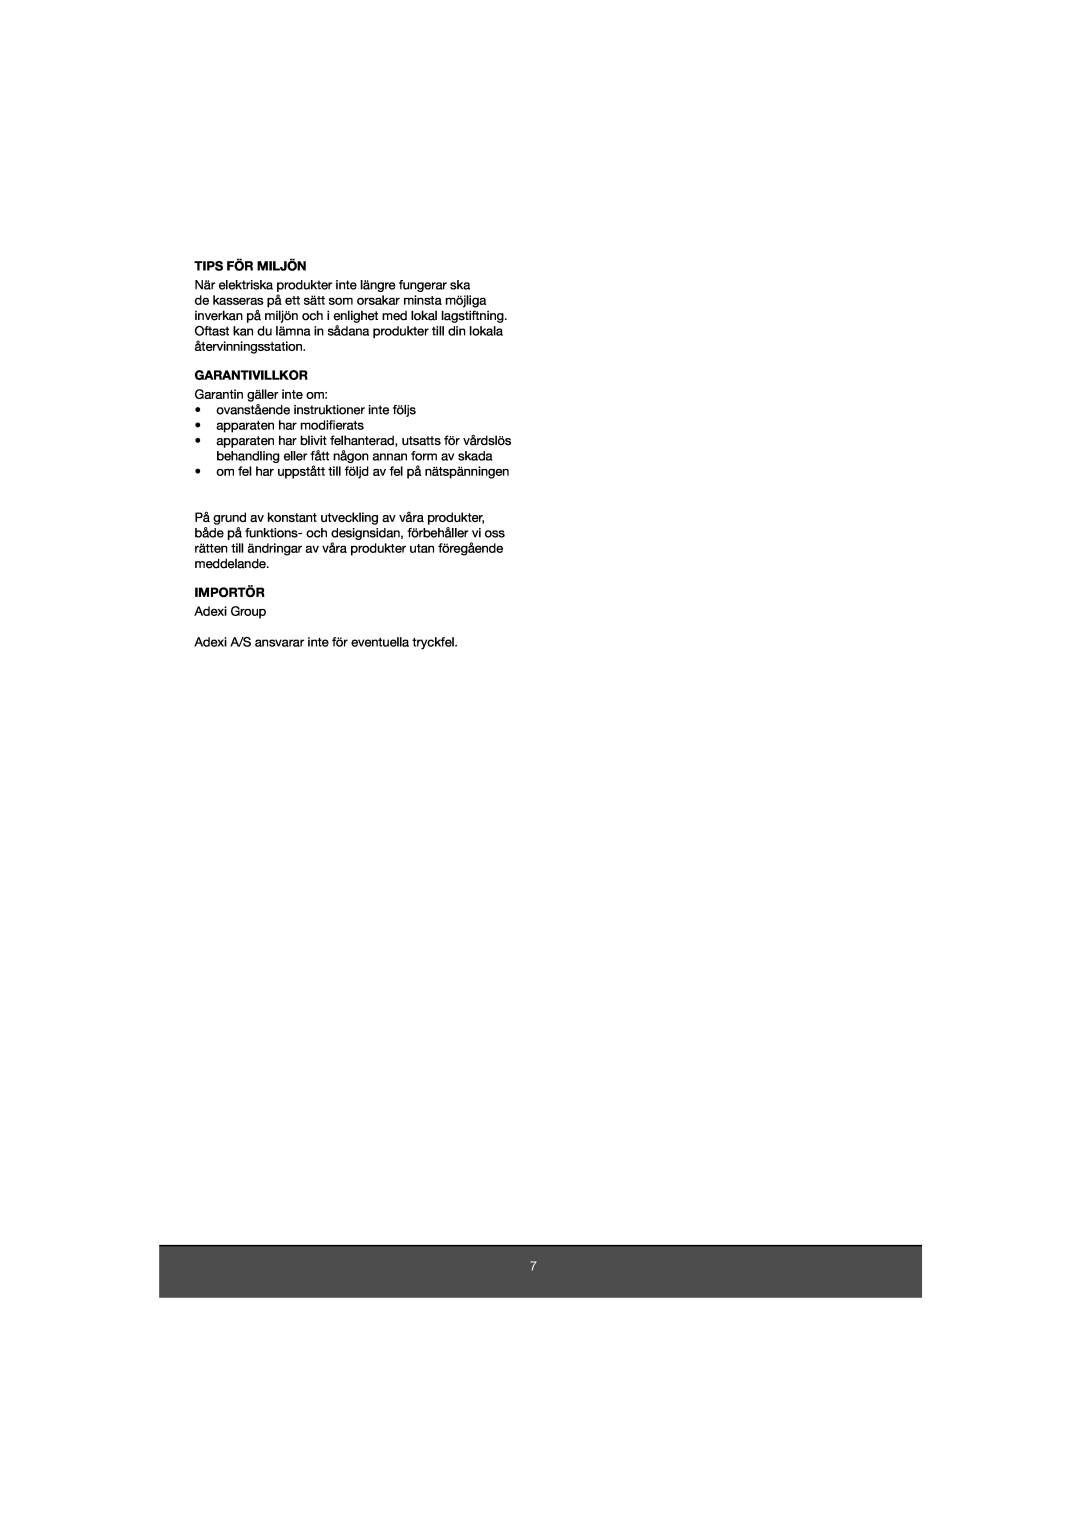 Melissa 653-081 manual Tips För Miljön, Garantivillkor, Importör 